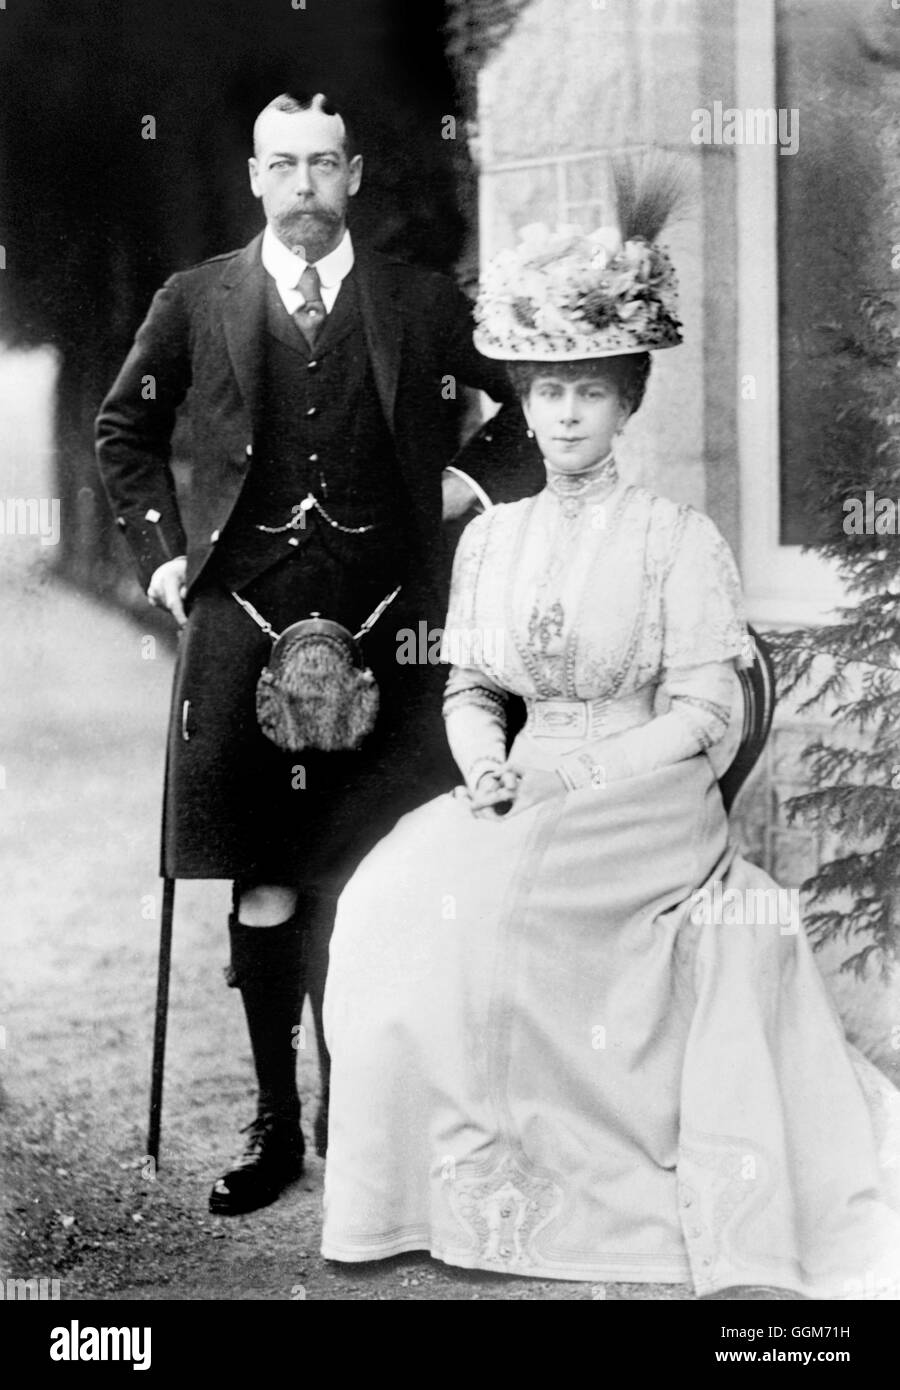 Le roi George V (1865-1936) et son épouse, la reine Mary (Mary de teck : 1867-1953), prises lorsqu'il était prince de Galles. George V a régné de 1910 à 1936. Photo de Bains News Service, c1909. Banque D'Images